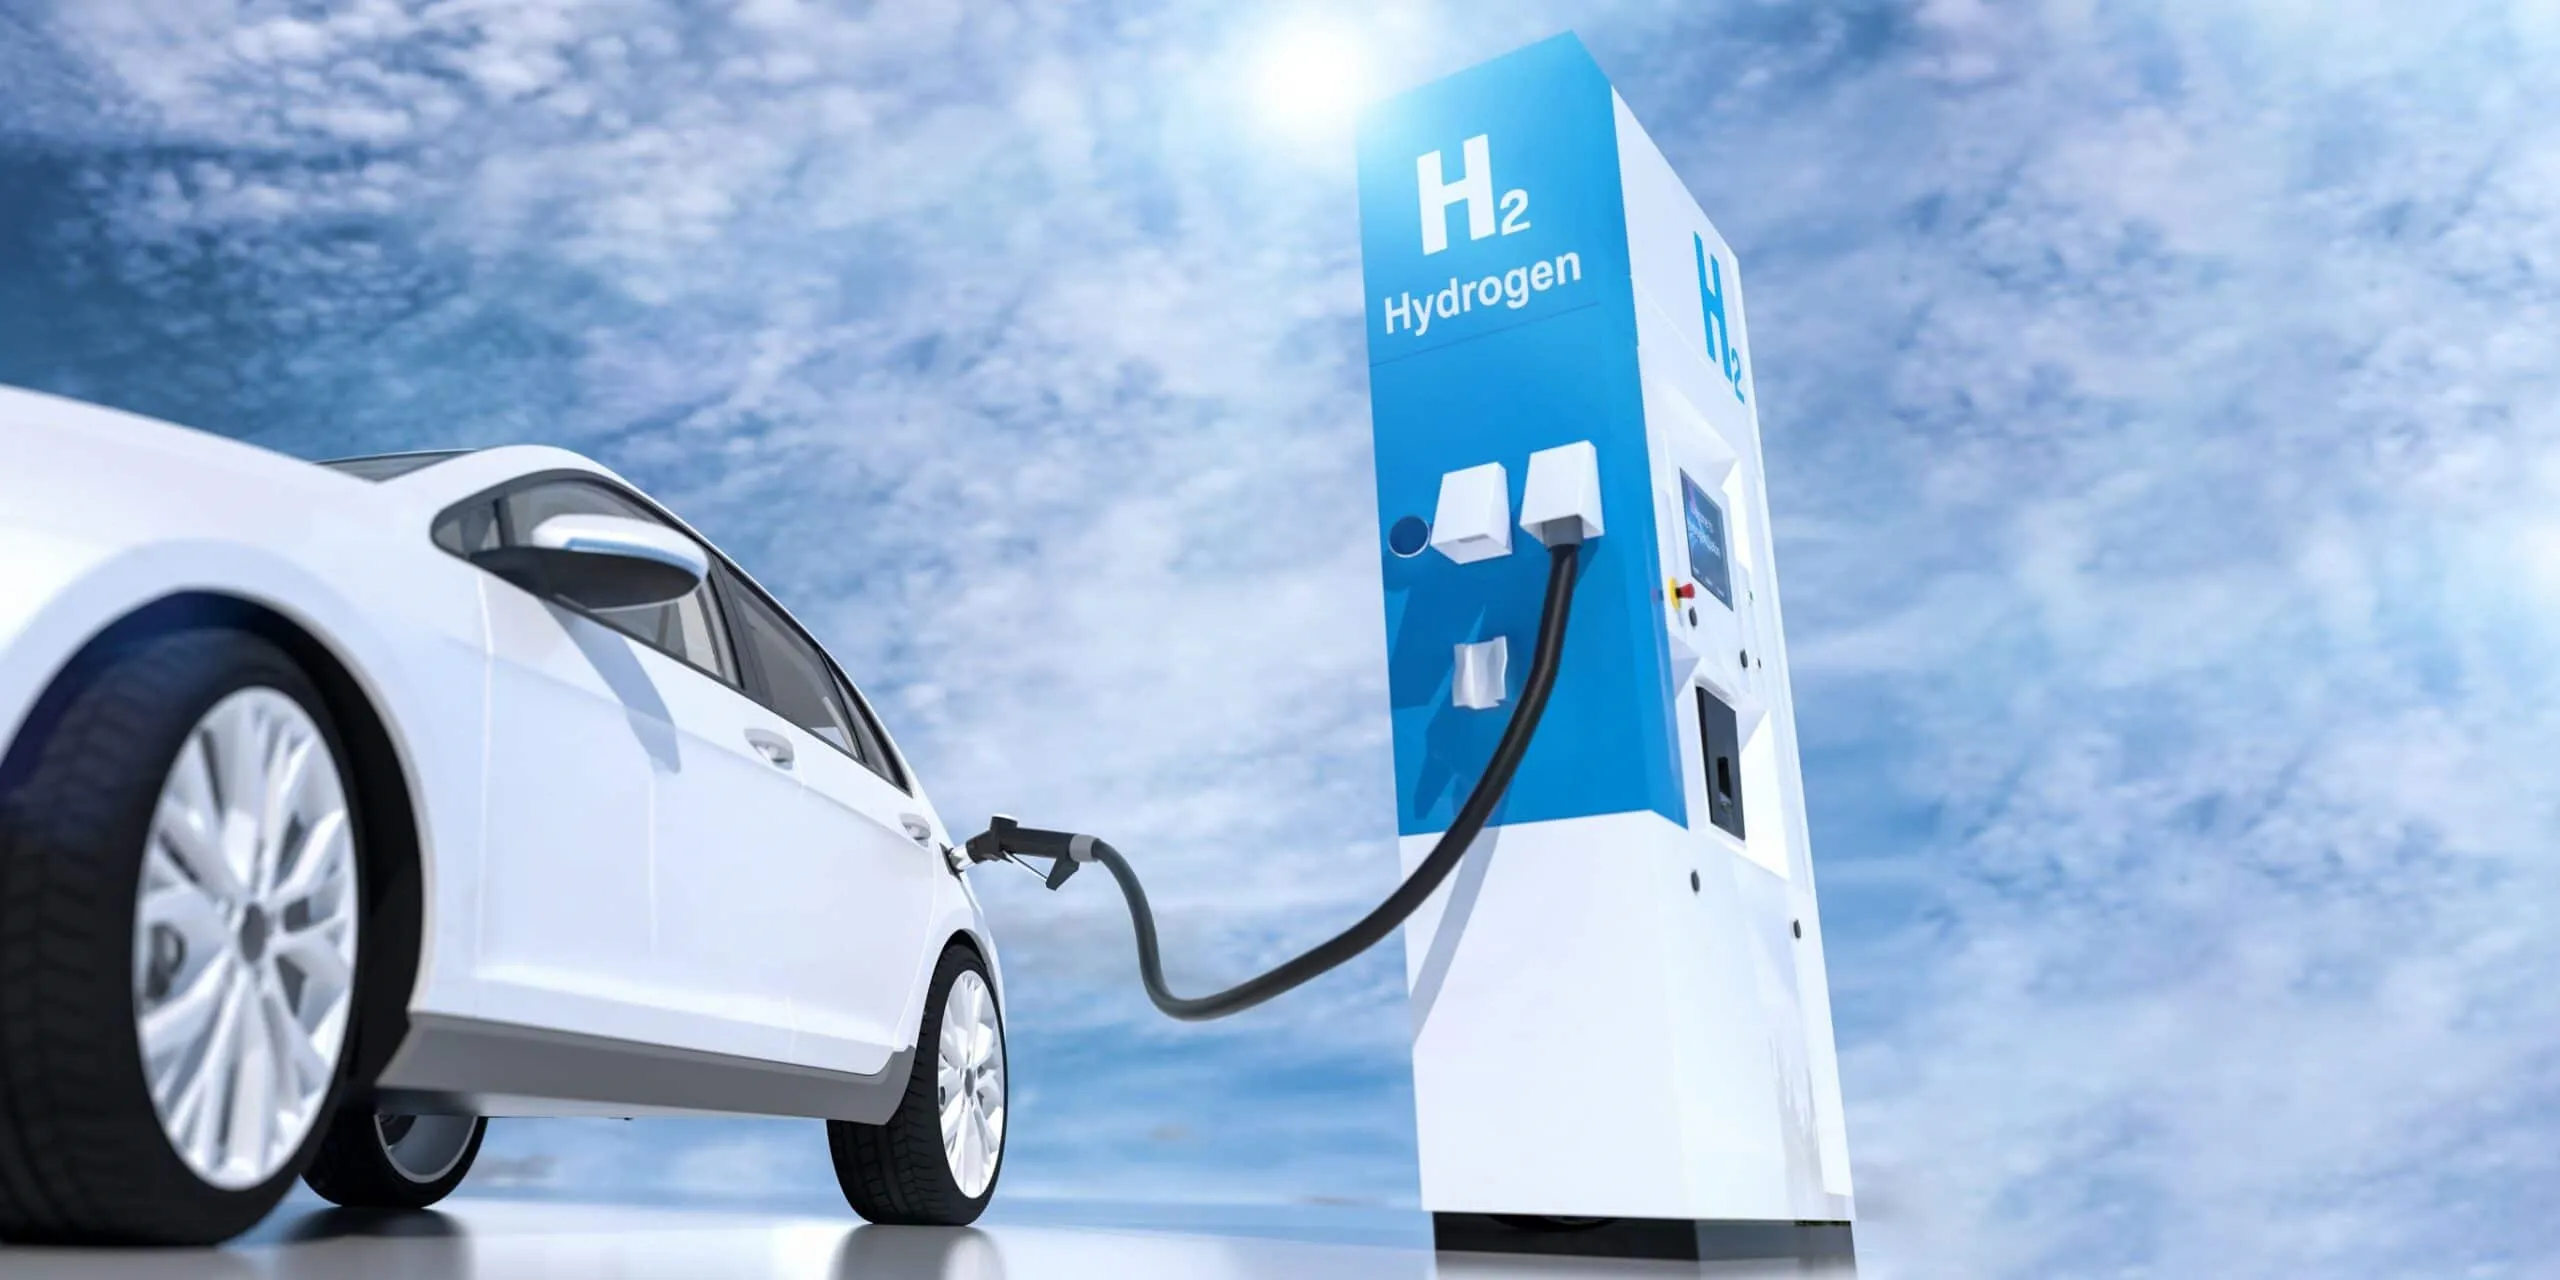 Hydrogen powered car refuelling